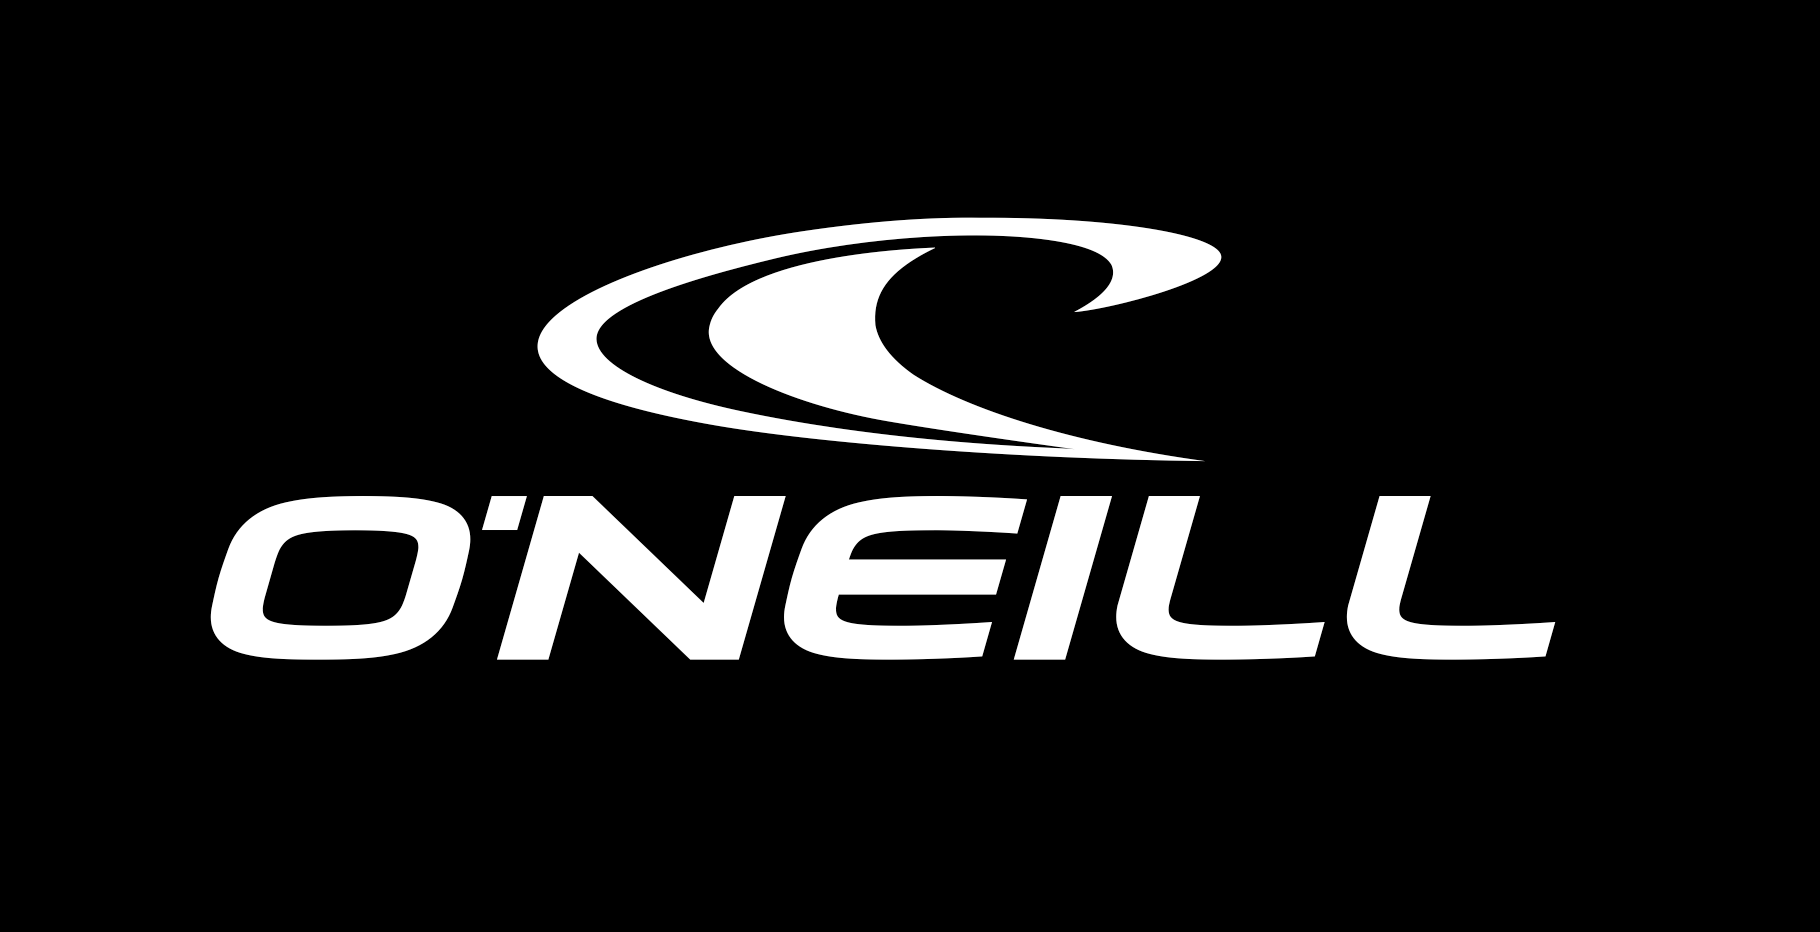 O'Neill Logo - O'Neill logo. :D. Surf logo, Logos, Clothing brand logos